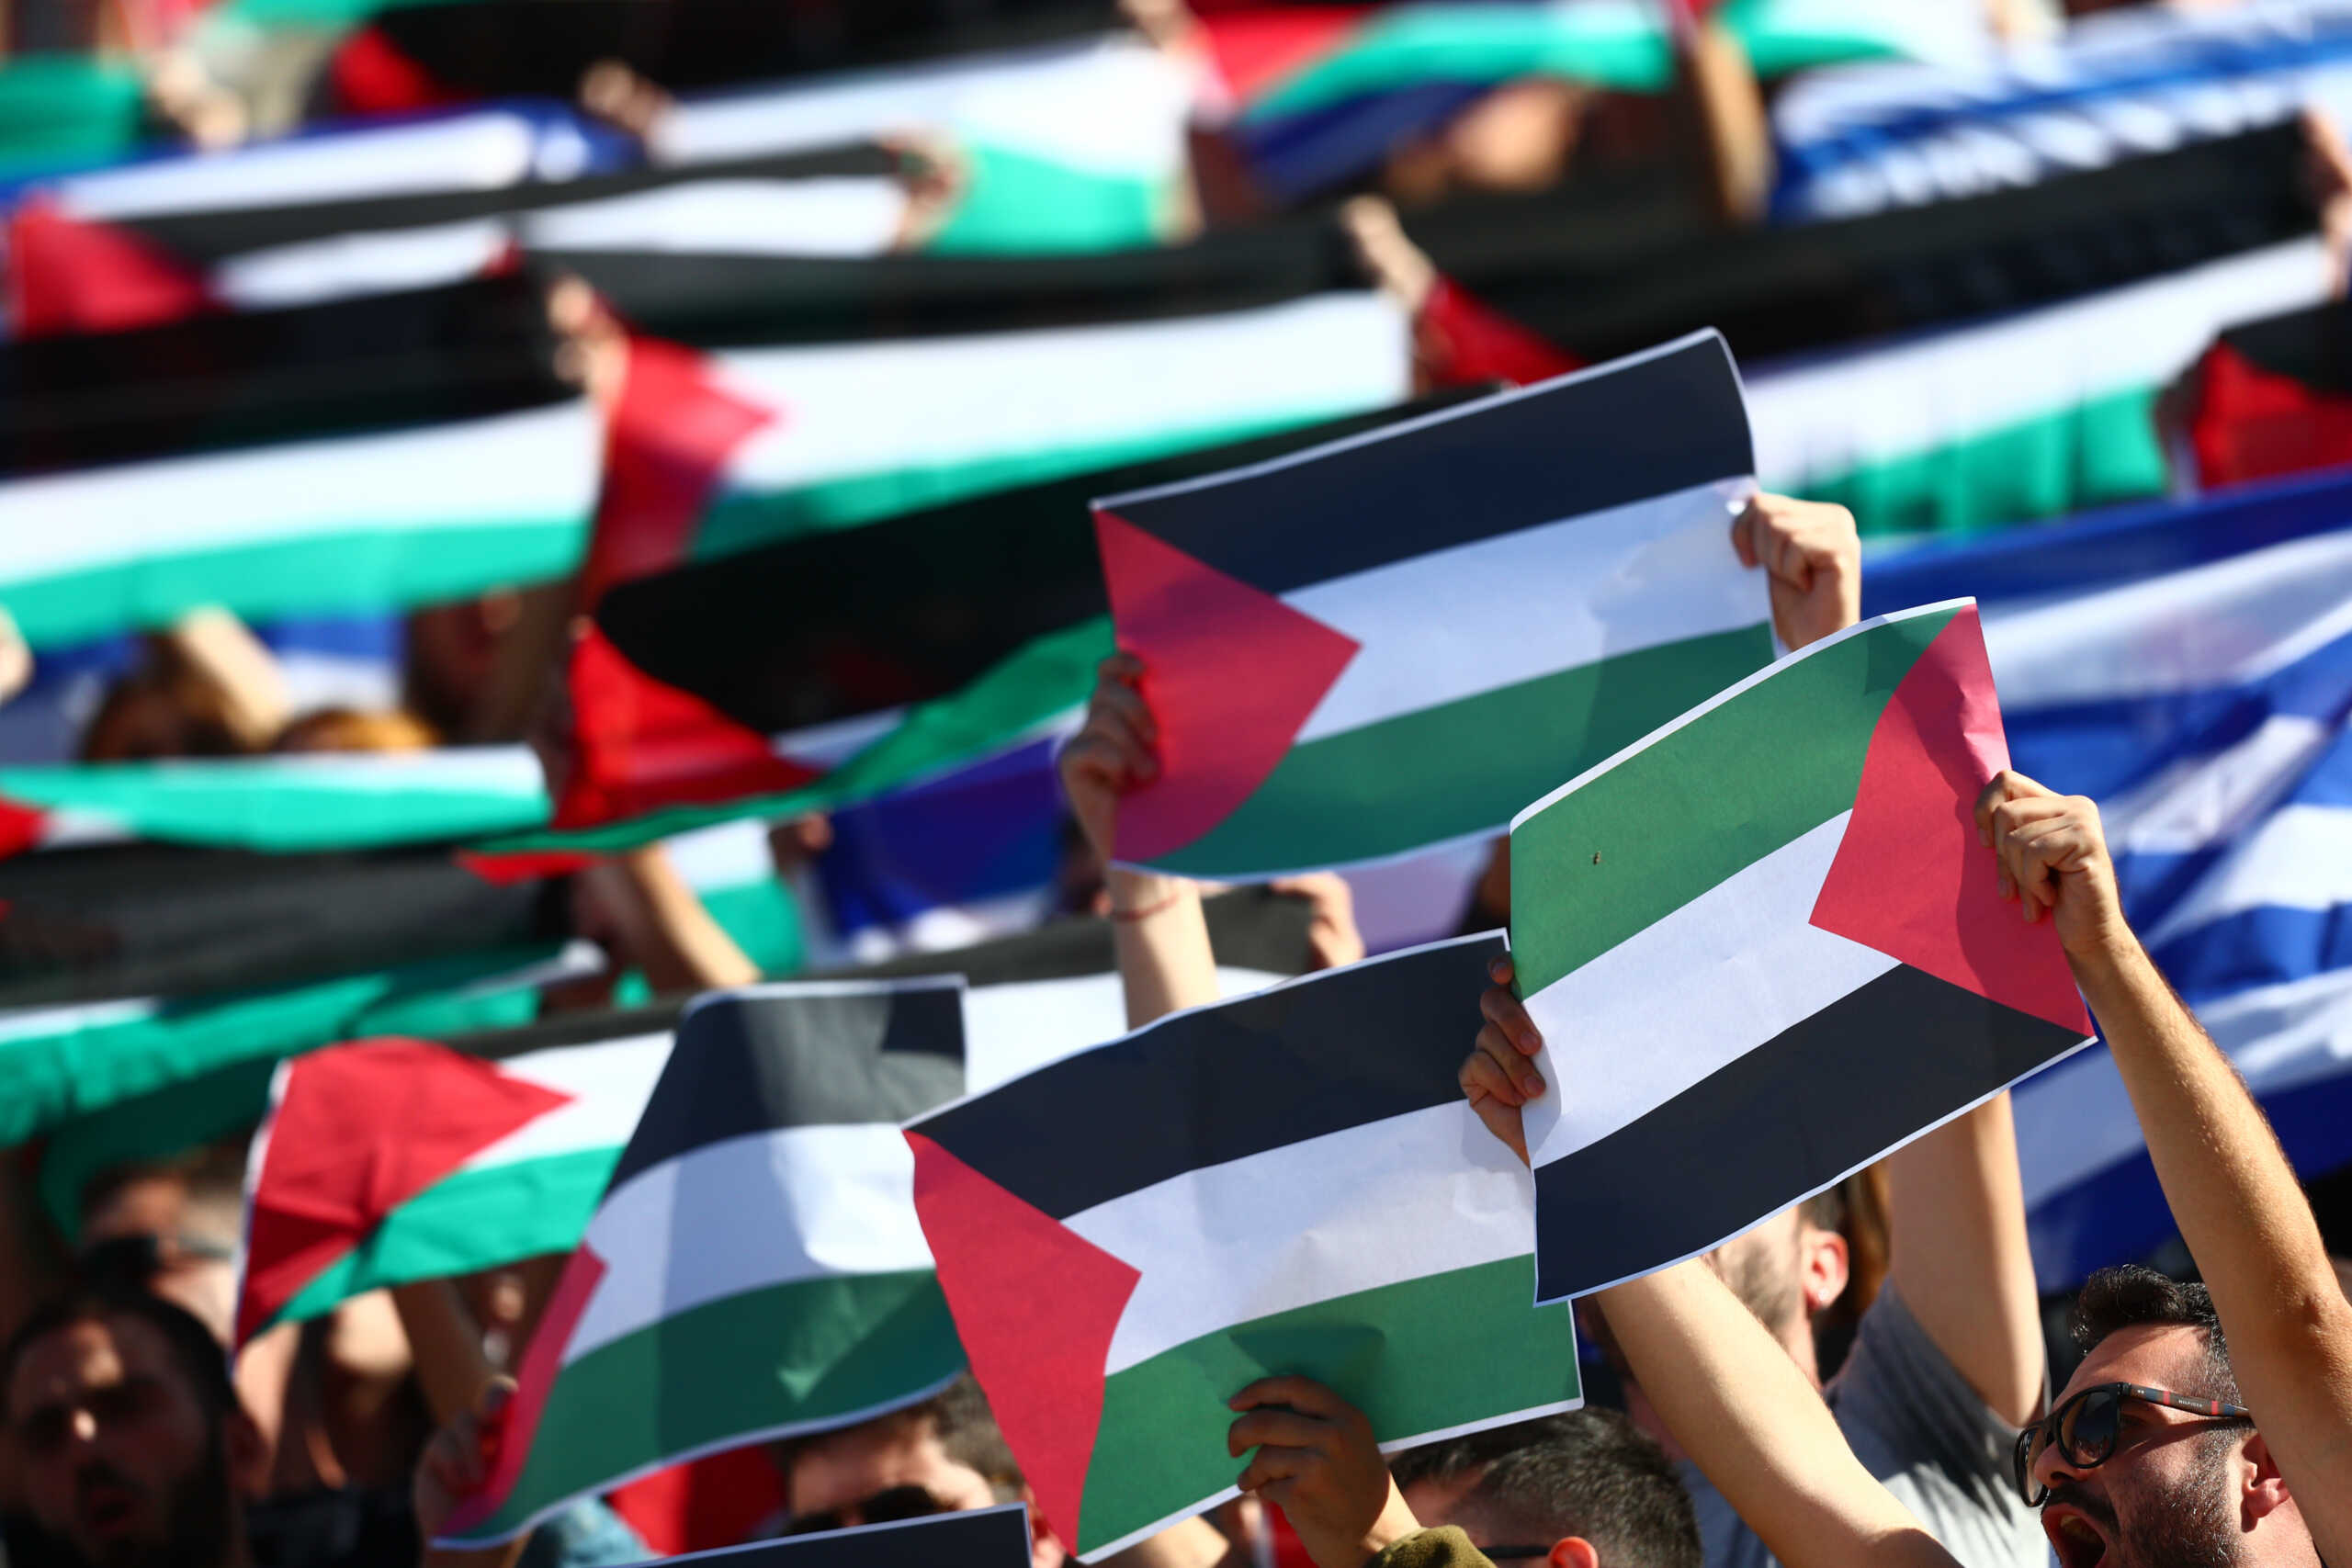 Ισπανία, Νορβηγία και Ιρλανδία αναγνωρίζουν το Παλαιστινιακό κράτος: Σφοδρή αντίδραση από το Ισραήλ